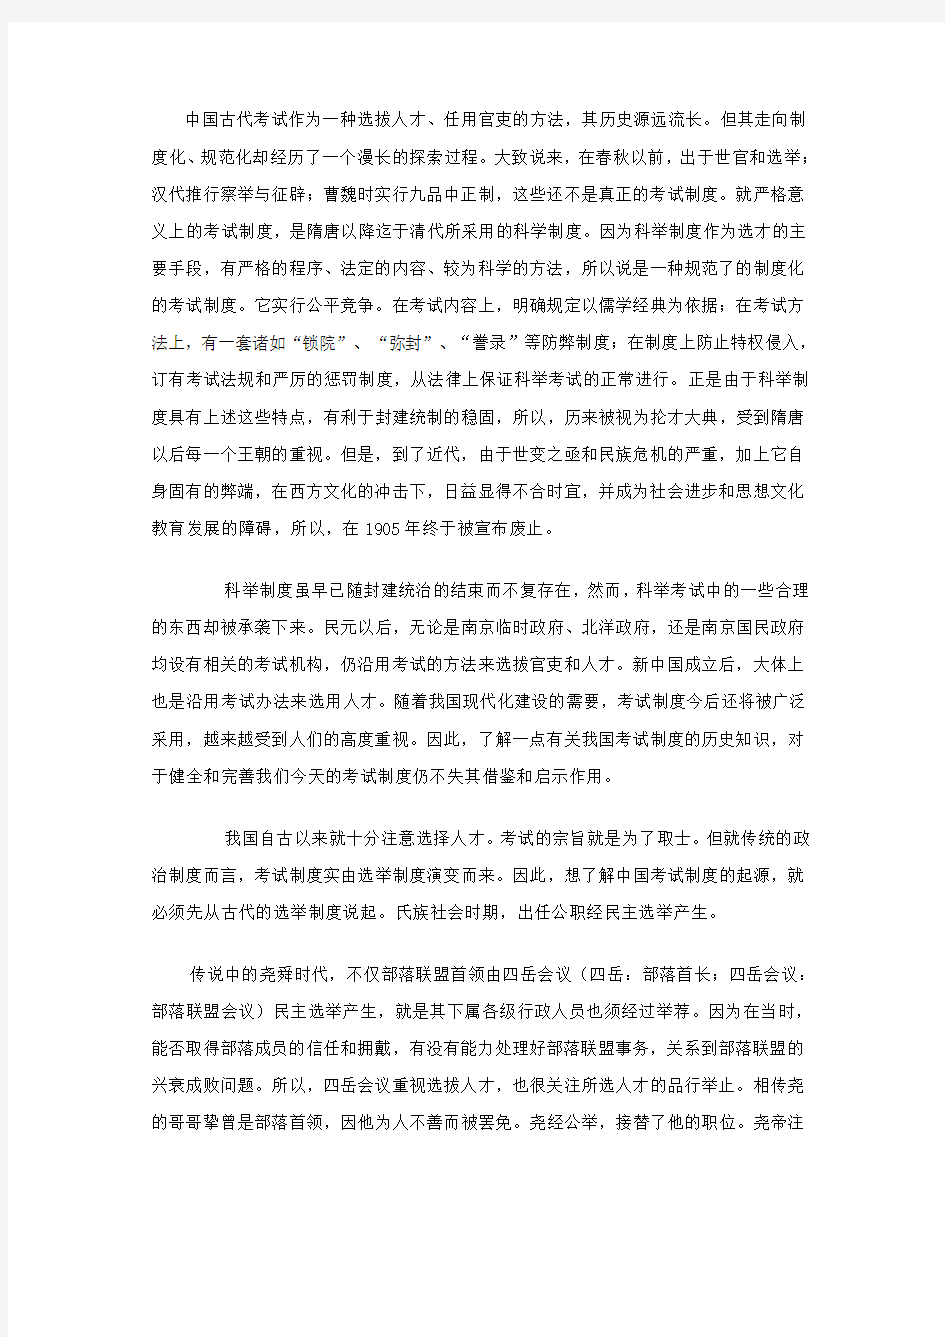 中国古代考试制度的起源